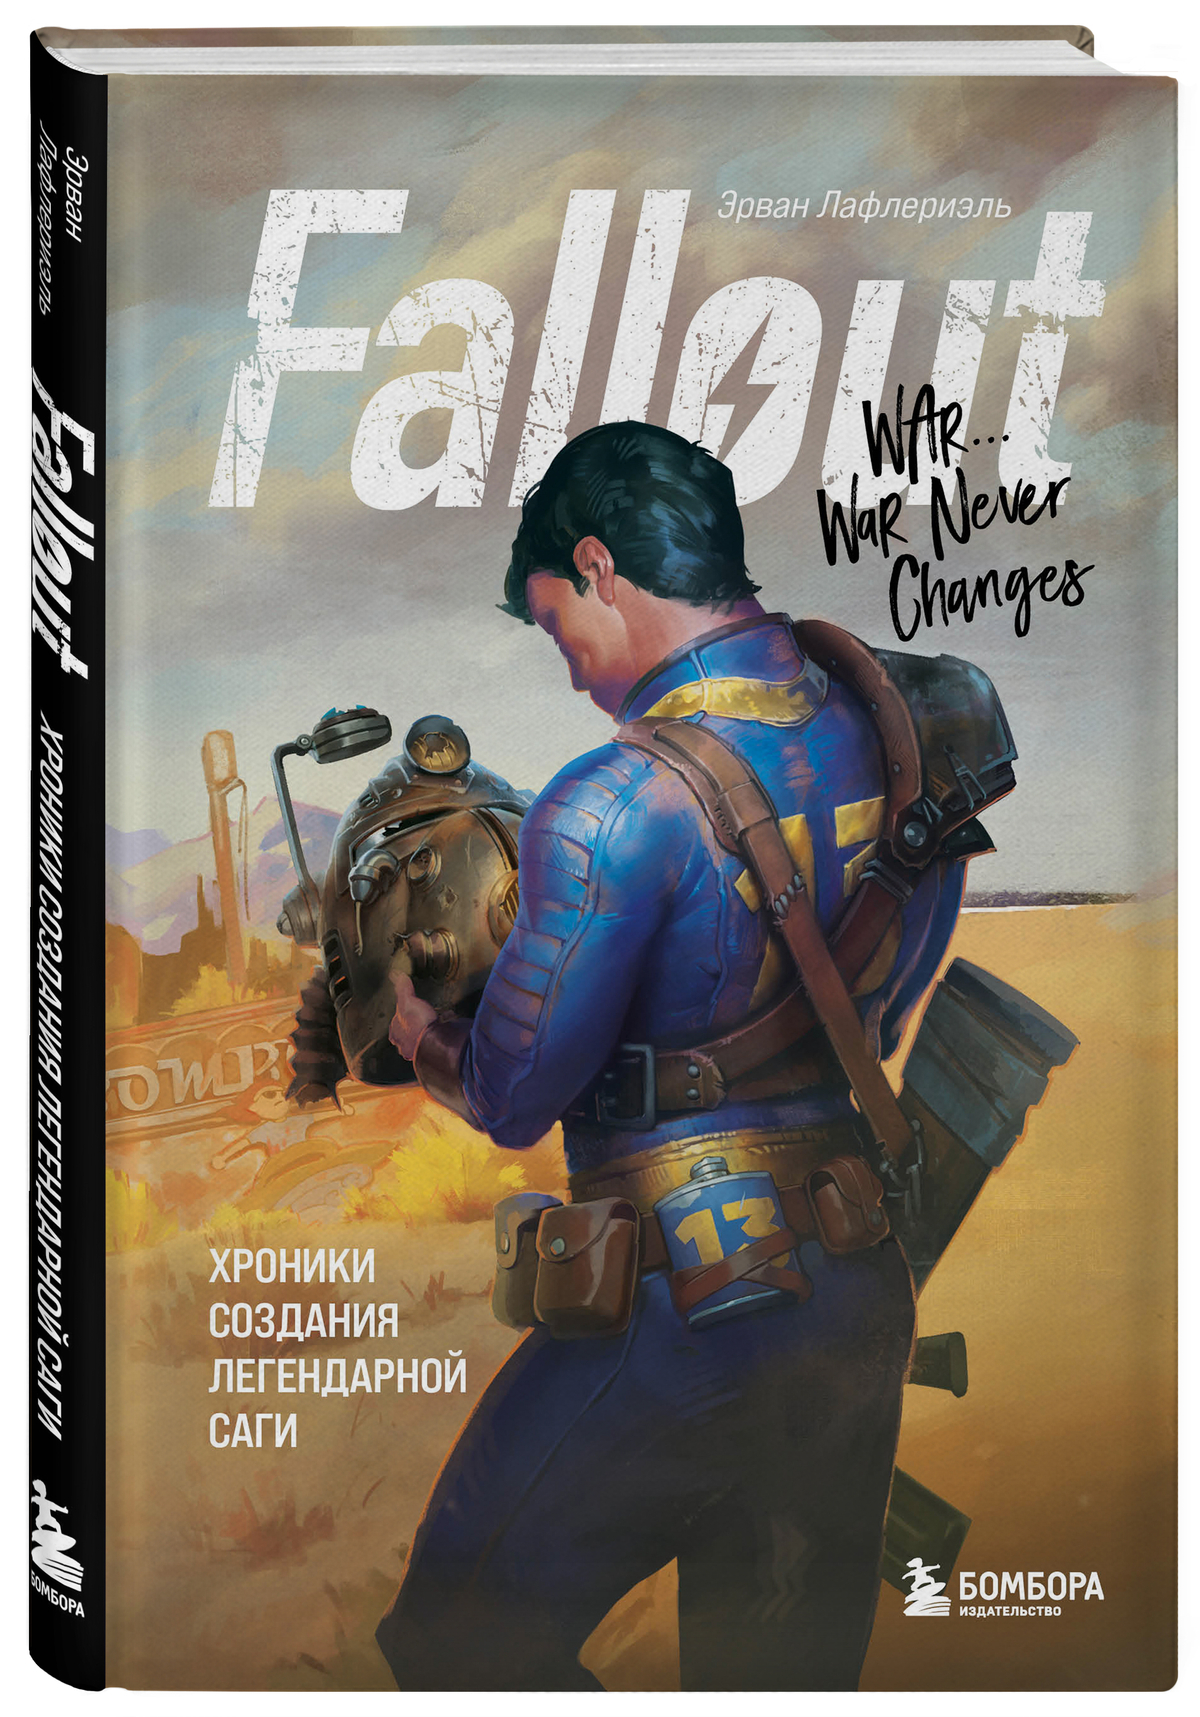 Издательство «БОМБОРА» представляет книгу «Fallout. Хроники создания легендарной саги»